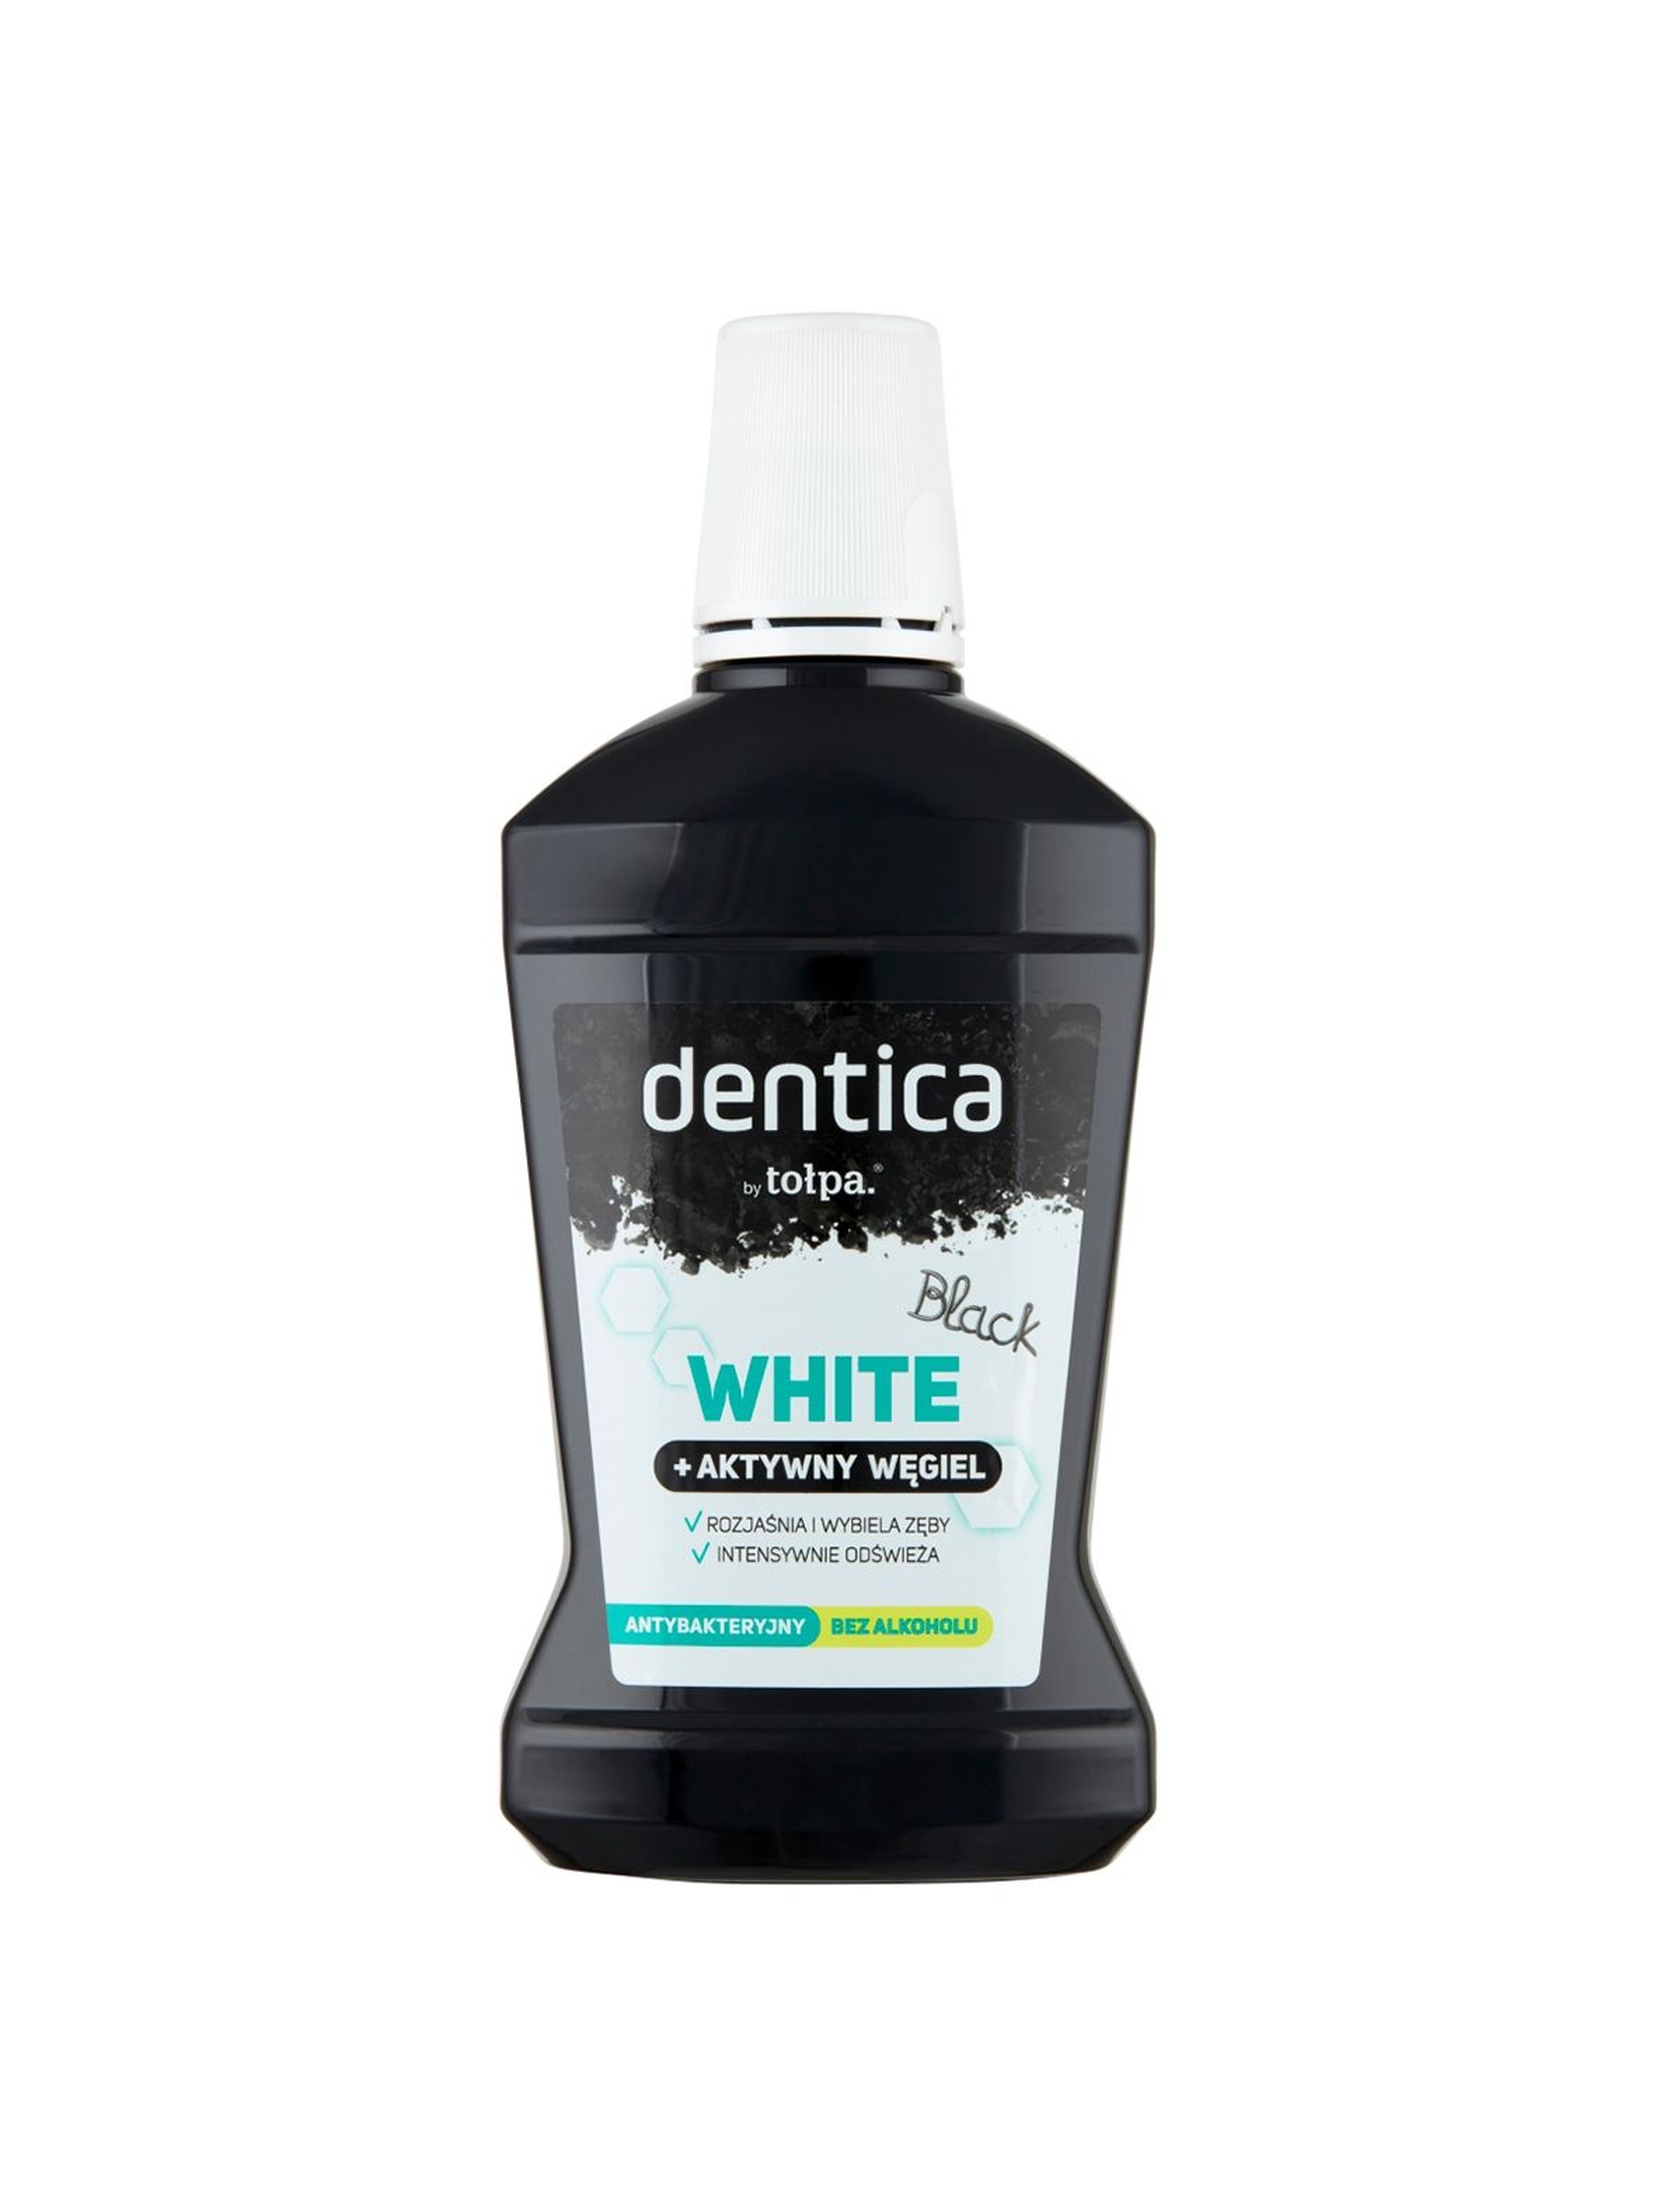 Dentica by tołpa płukanka z węglem aktywnym black white 500 ml